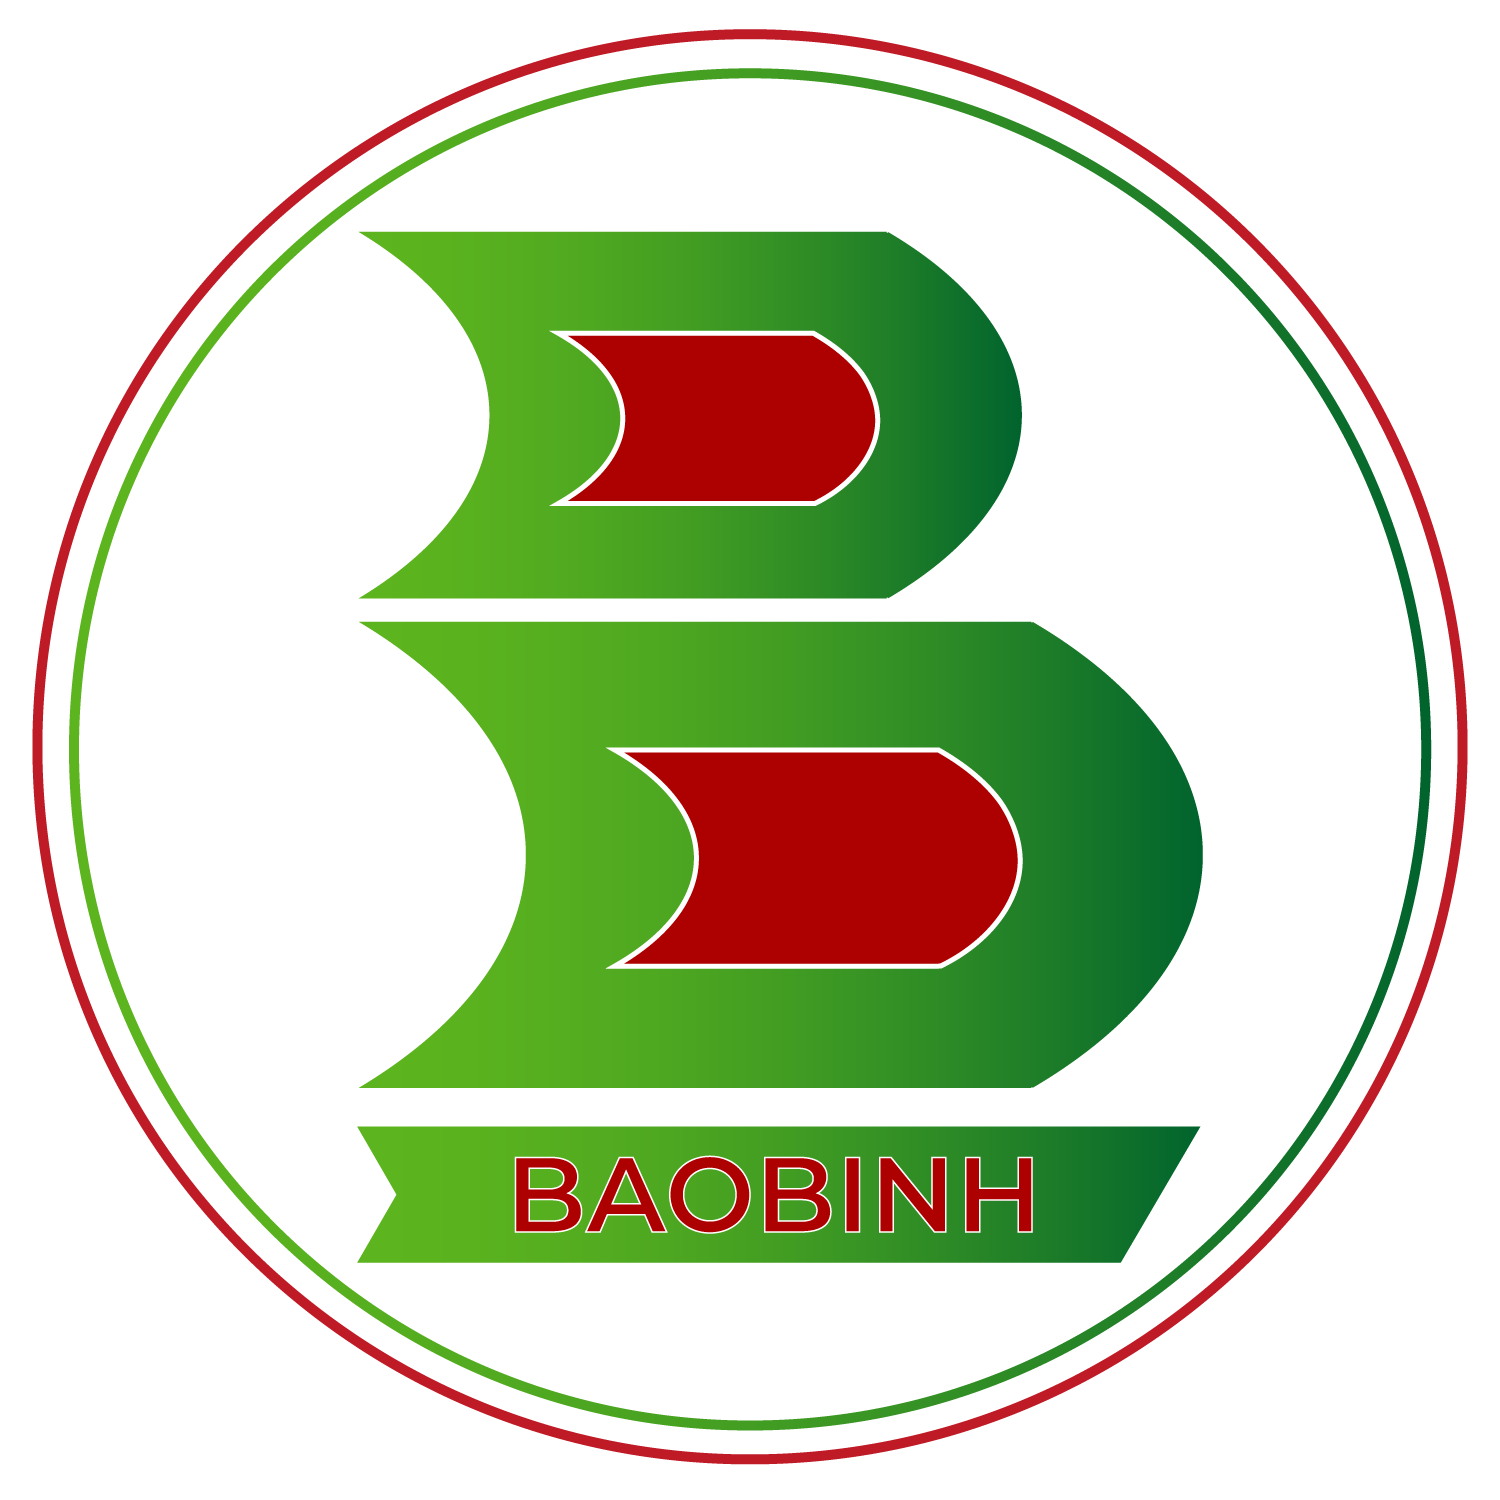 Bao Binh Composite